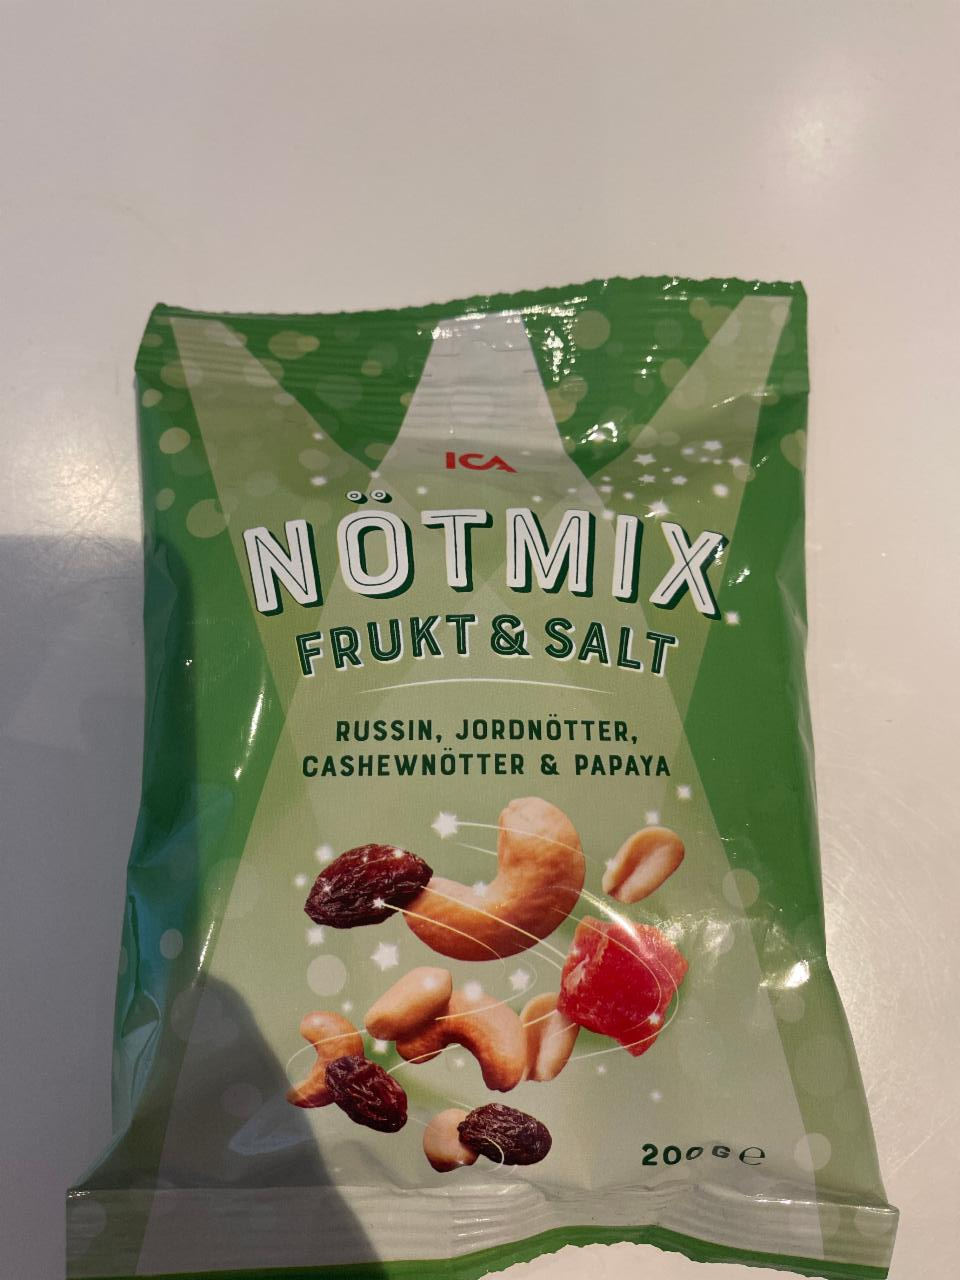 Фото - Notmix frukt&salt смесь орехов и сухофруктов ICA